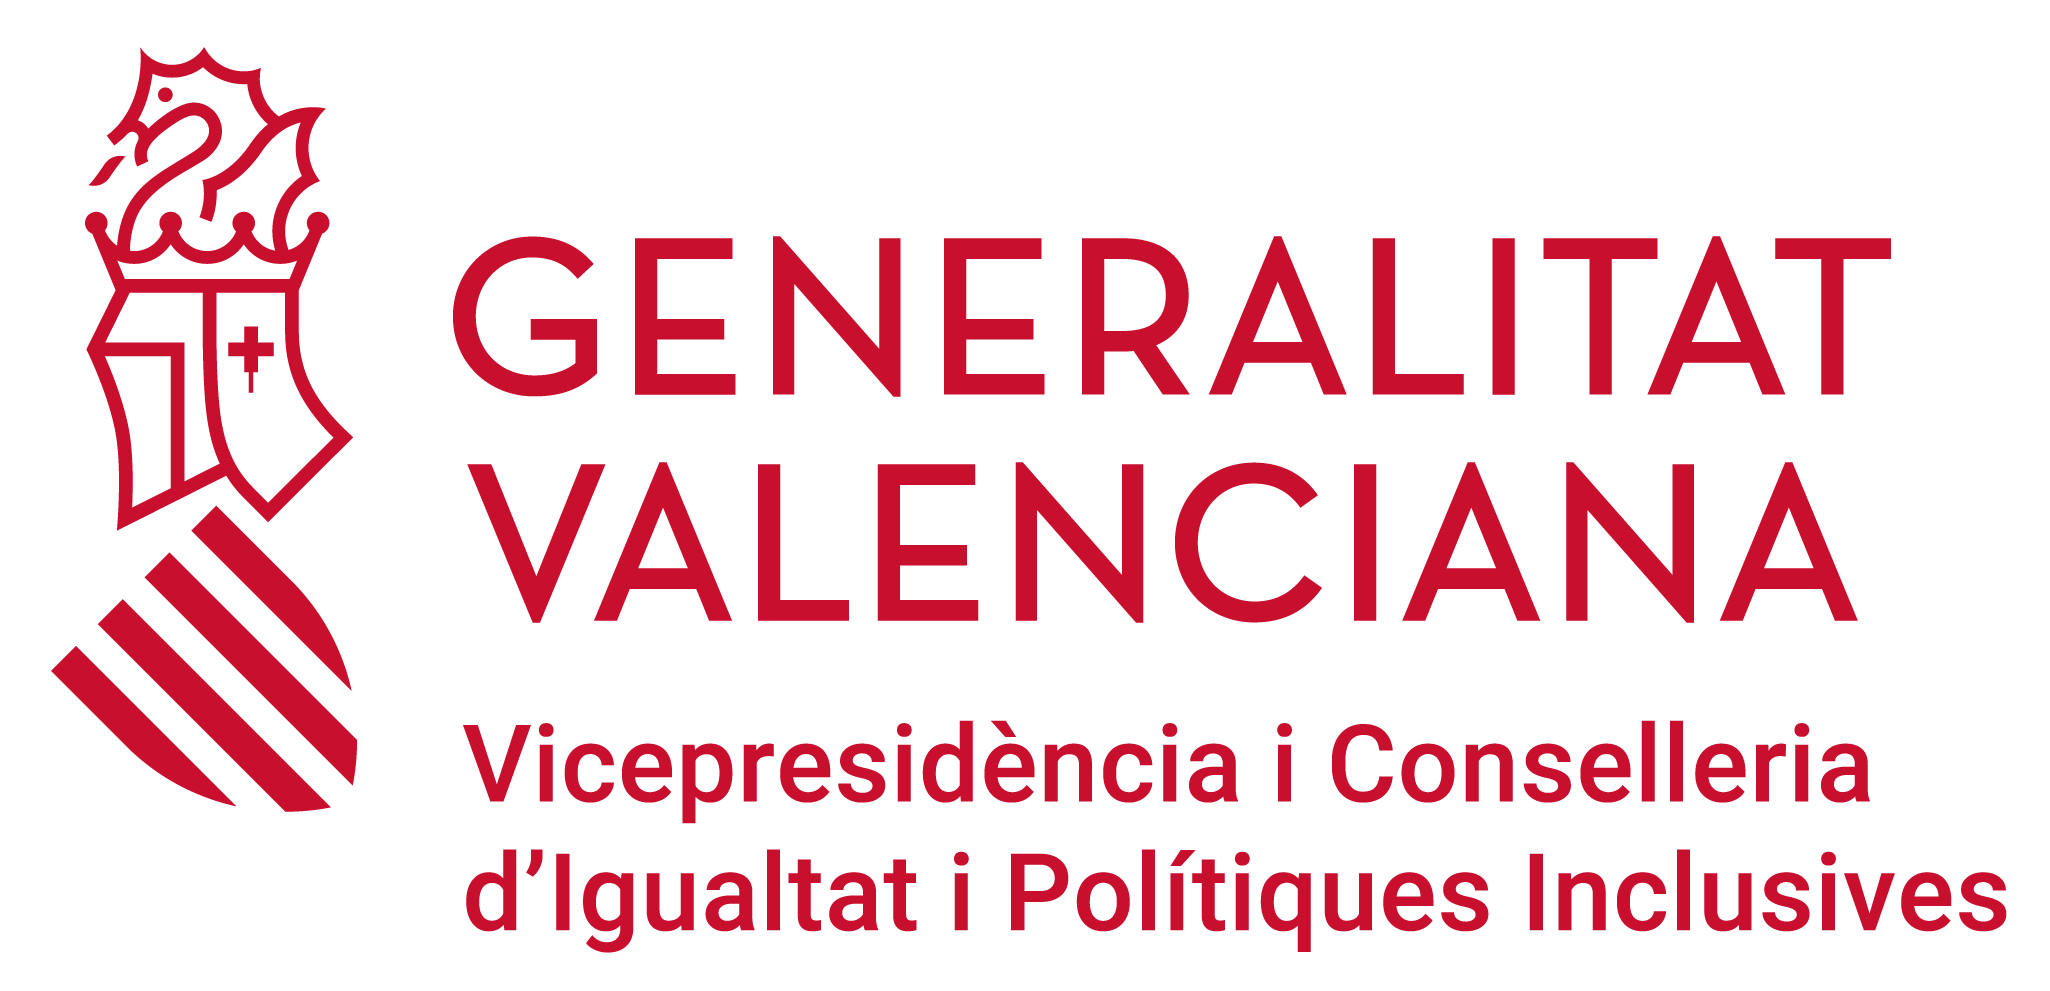 Generalitat Valenciana. Conselleria d'Igualtat i Polítiques Inclusives